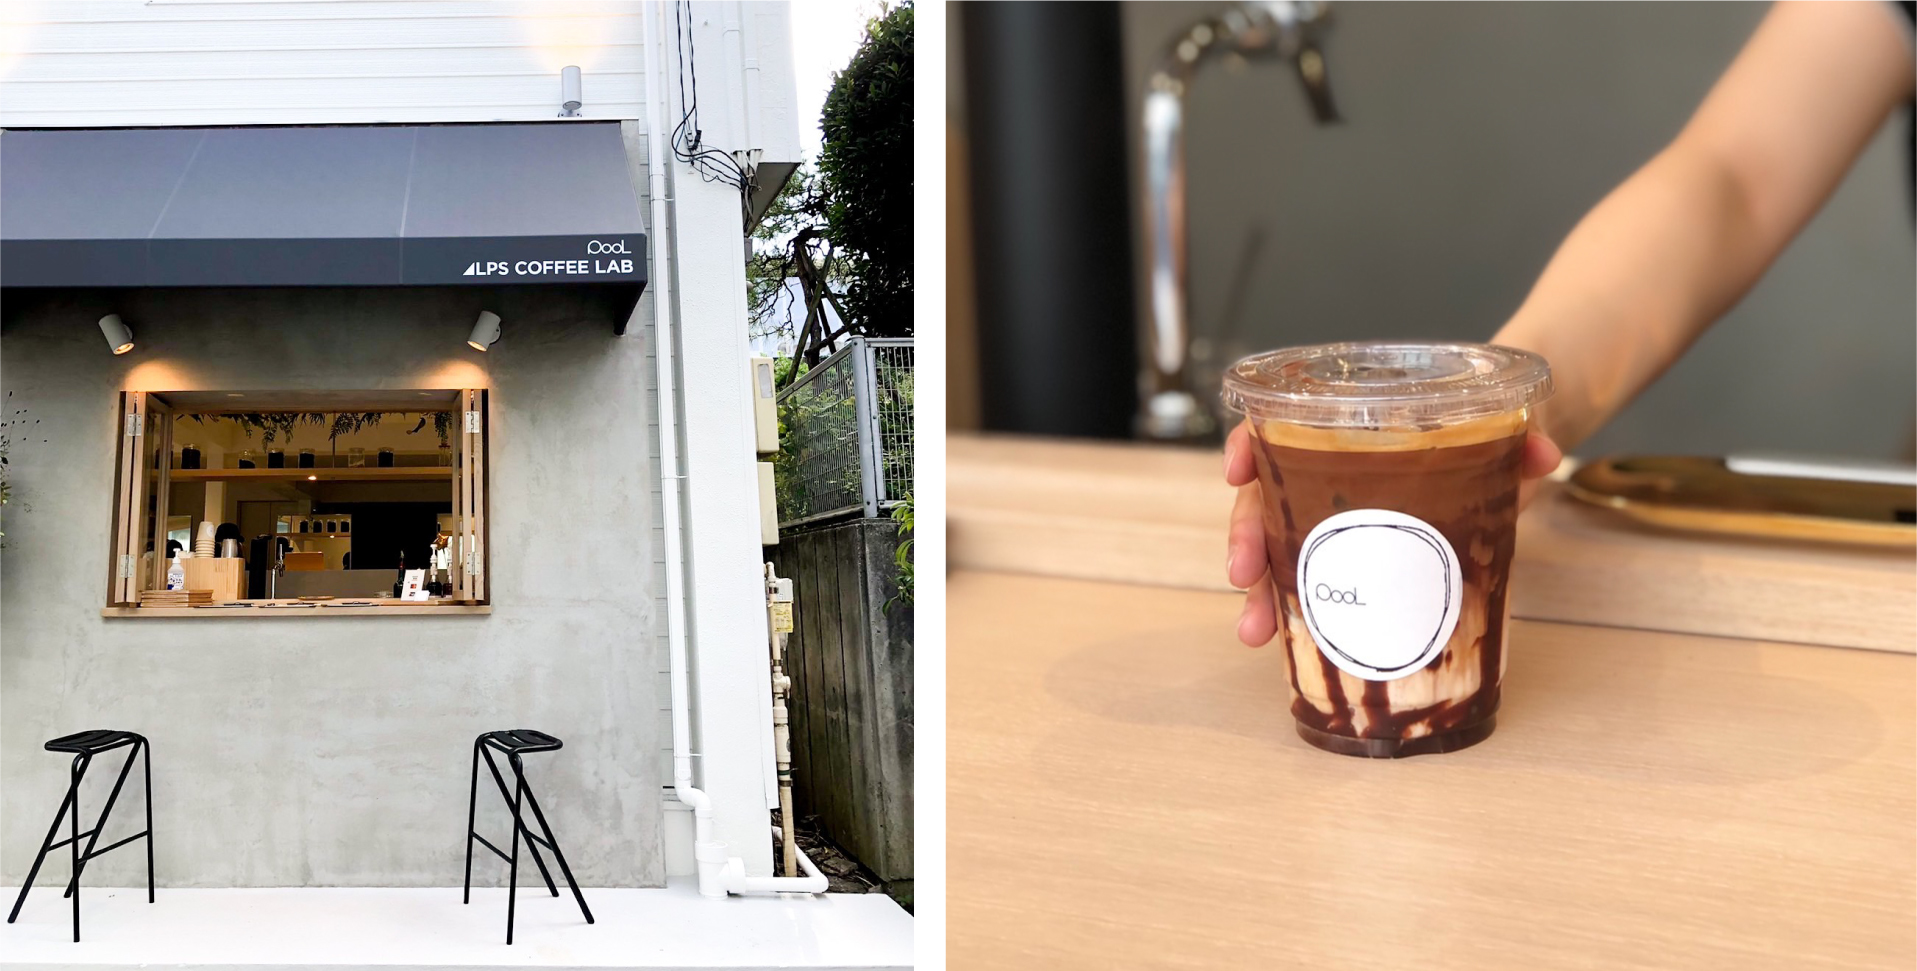 “インフューズドコーヒー”を味わえる都内初の店舗　
コーヒースタンド『POOL cafe』裏原宿に
10月1日(土)グランドオープン